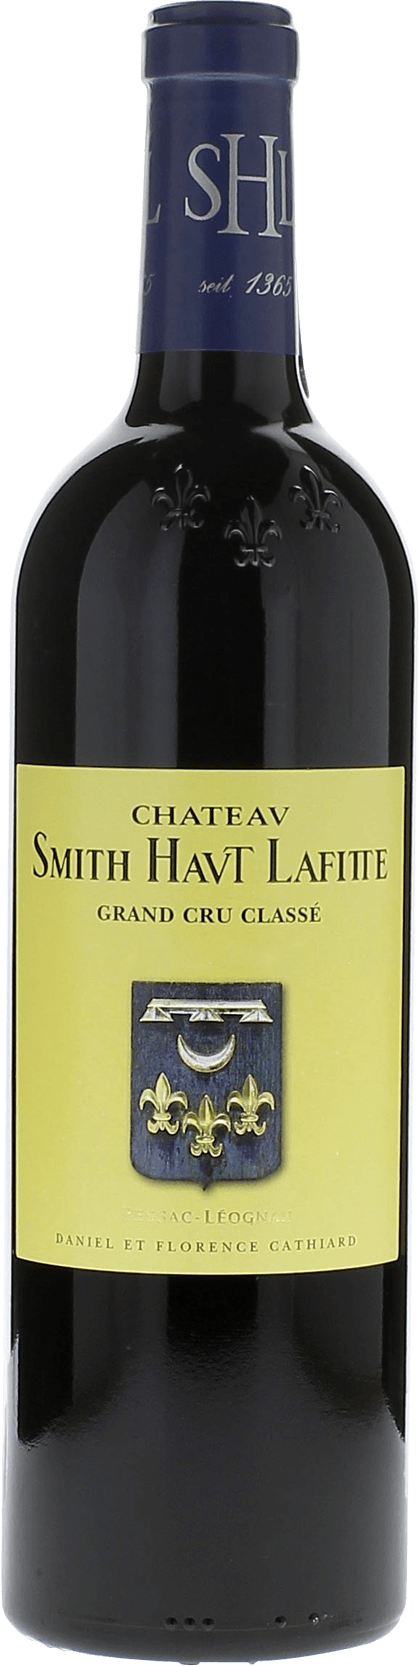 Smith haut lafitte 2001 Grand Cru Class Pessac-Lognan, Bordeaux rouge